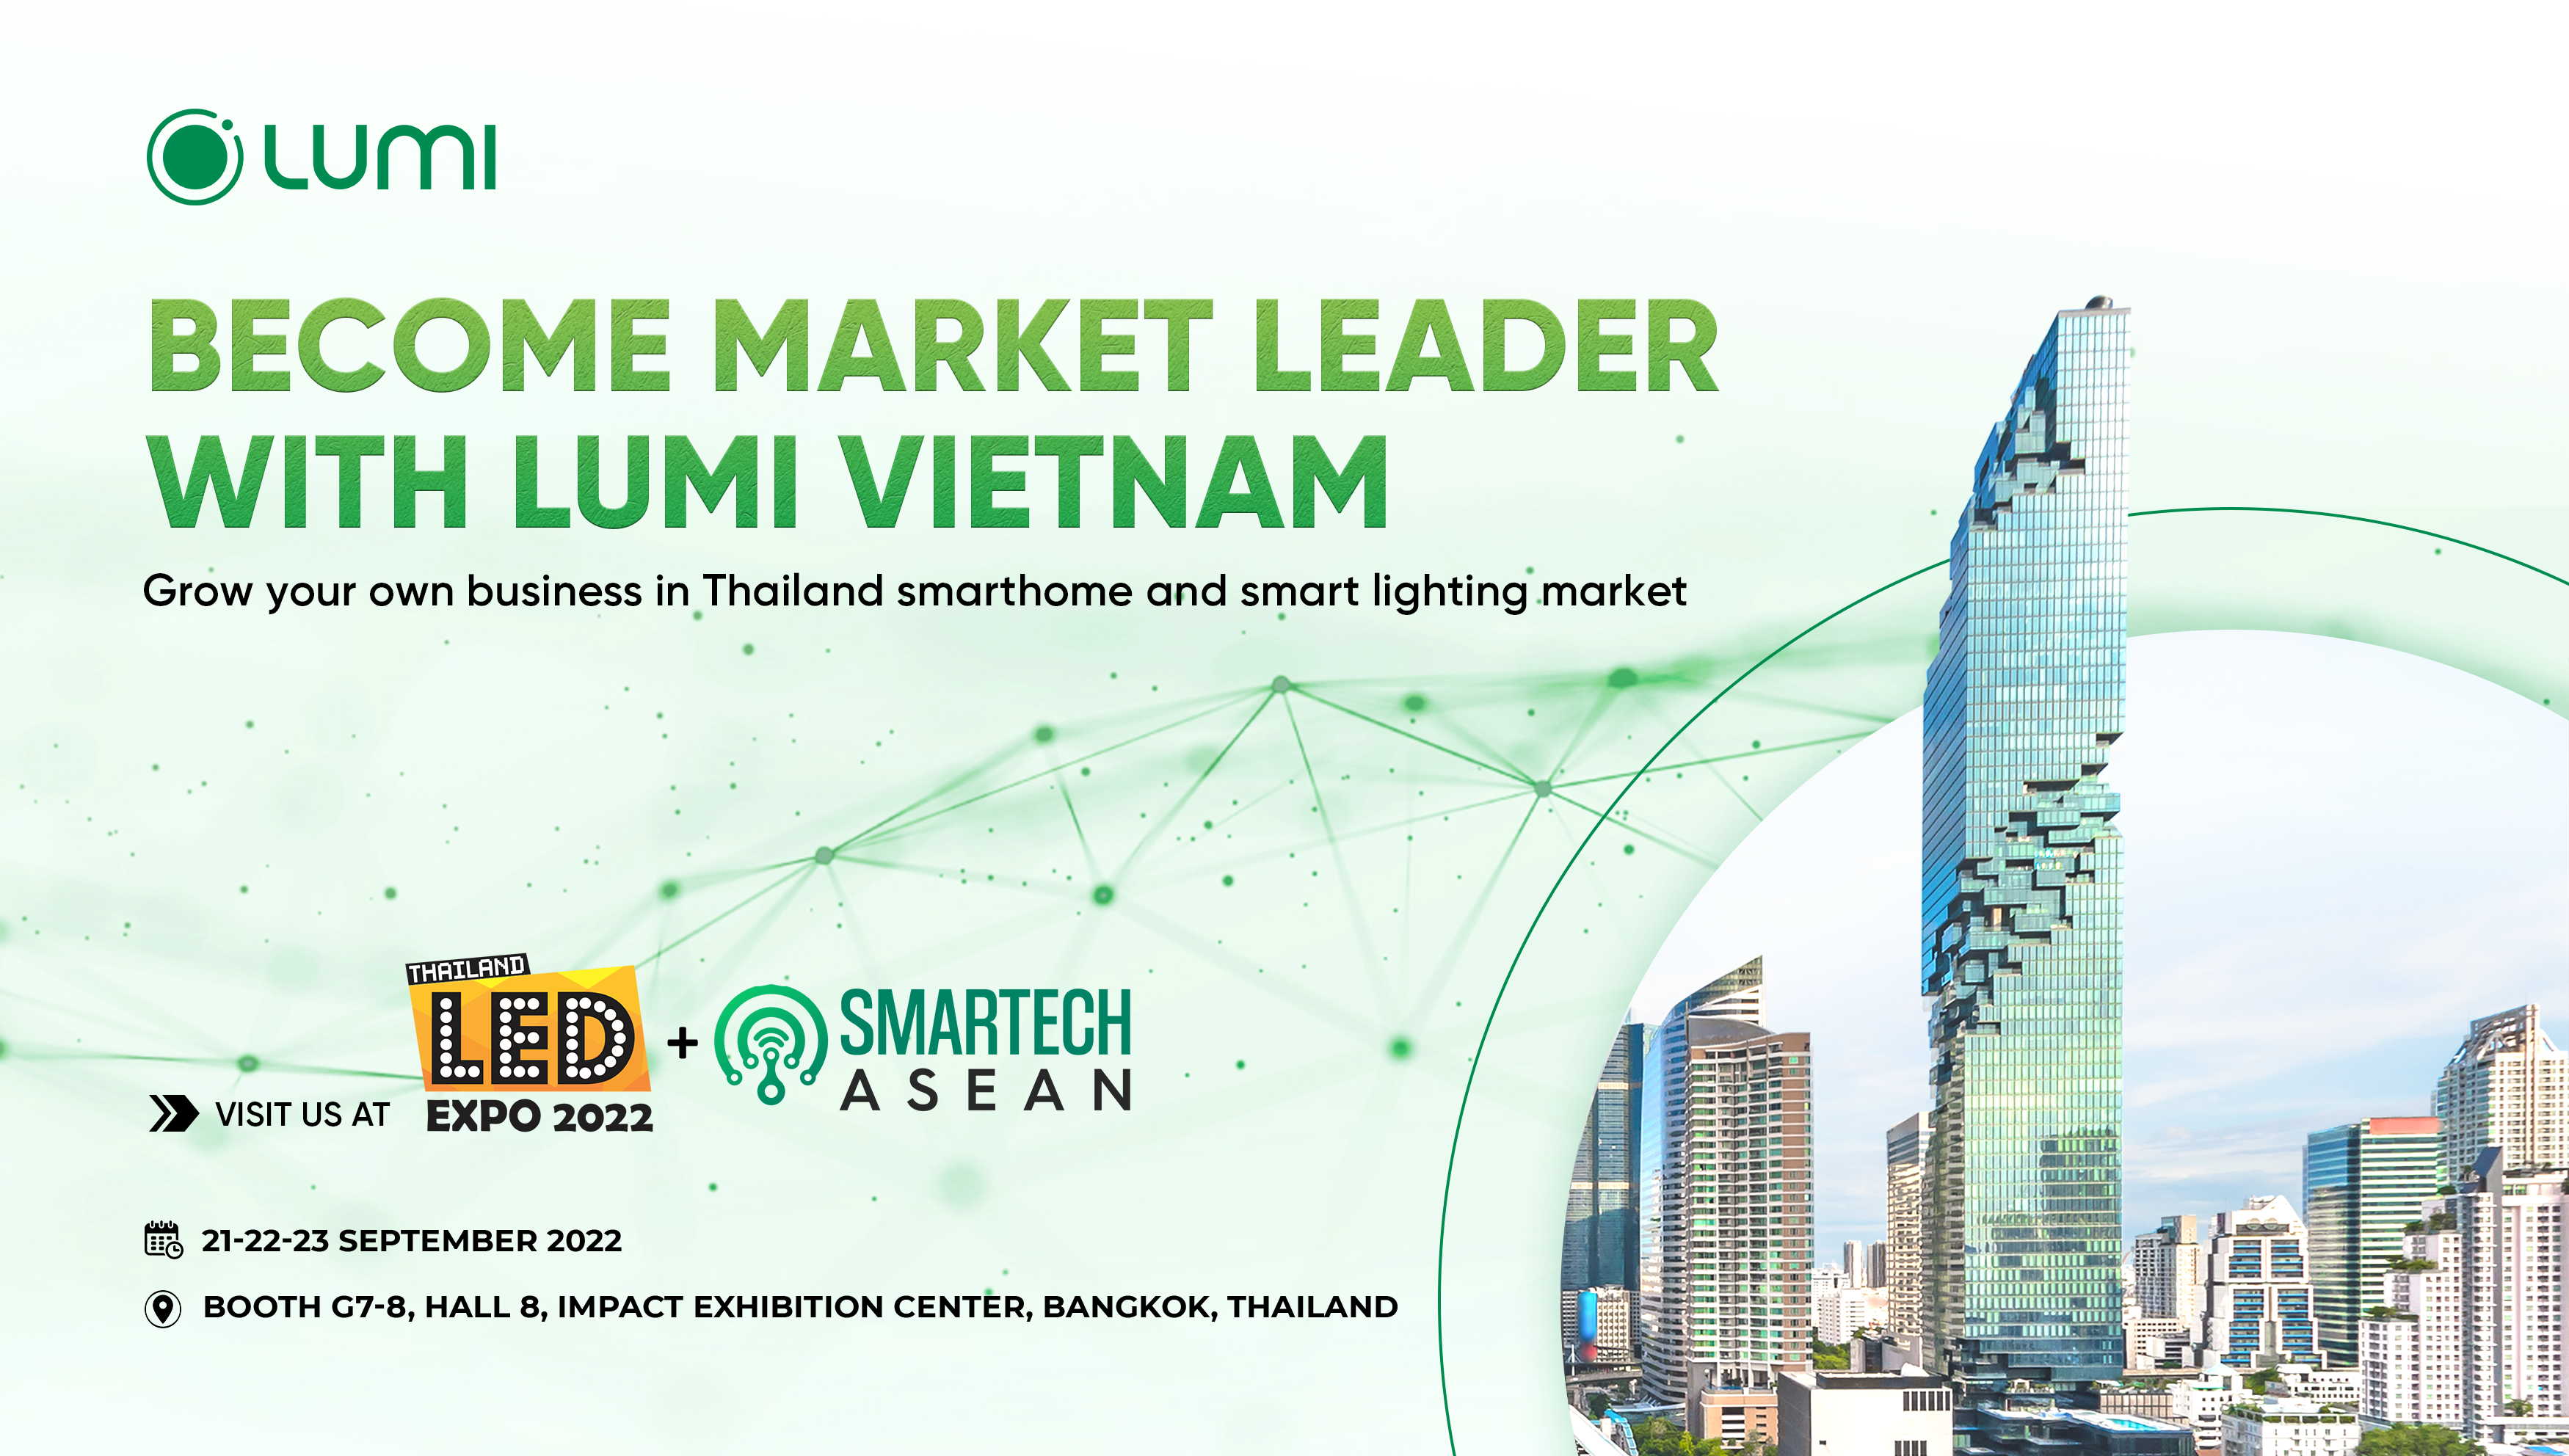 ขยายธุรกิจในอุตสาหกรรมสมาร์ทโฮมและไฟอัจฉริยะมูลค่าล้านเหรียญในประเทศไทยกับ Lumi